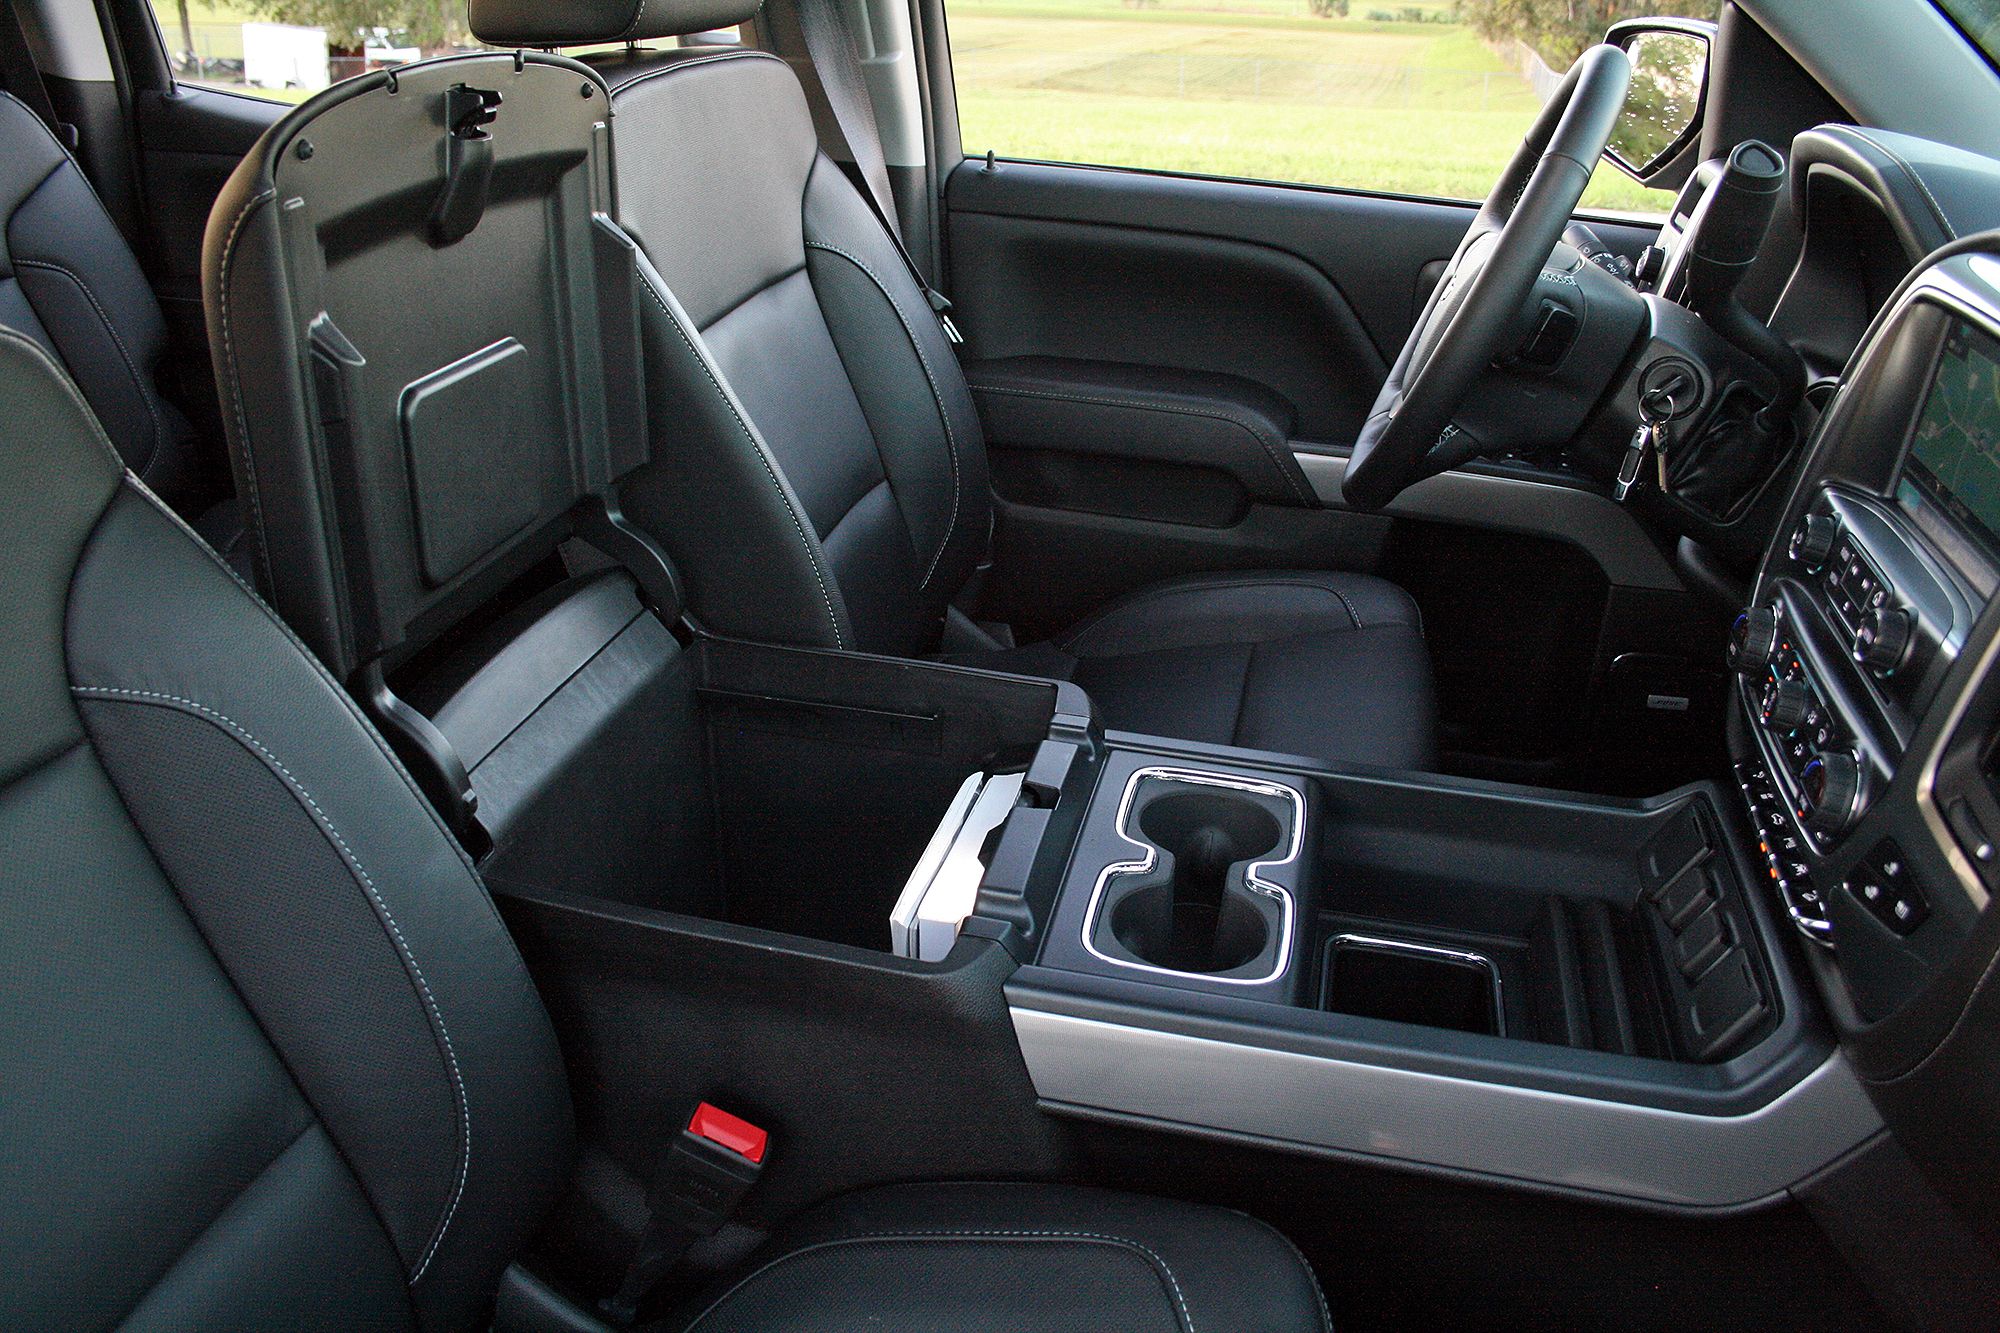 Comfy interior makes long drives fun